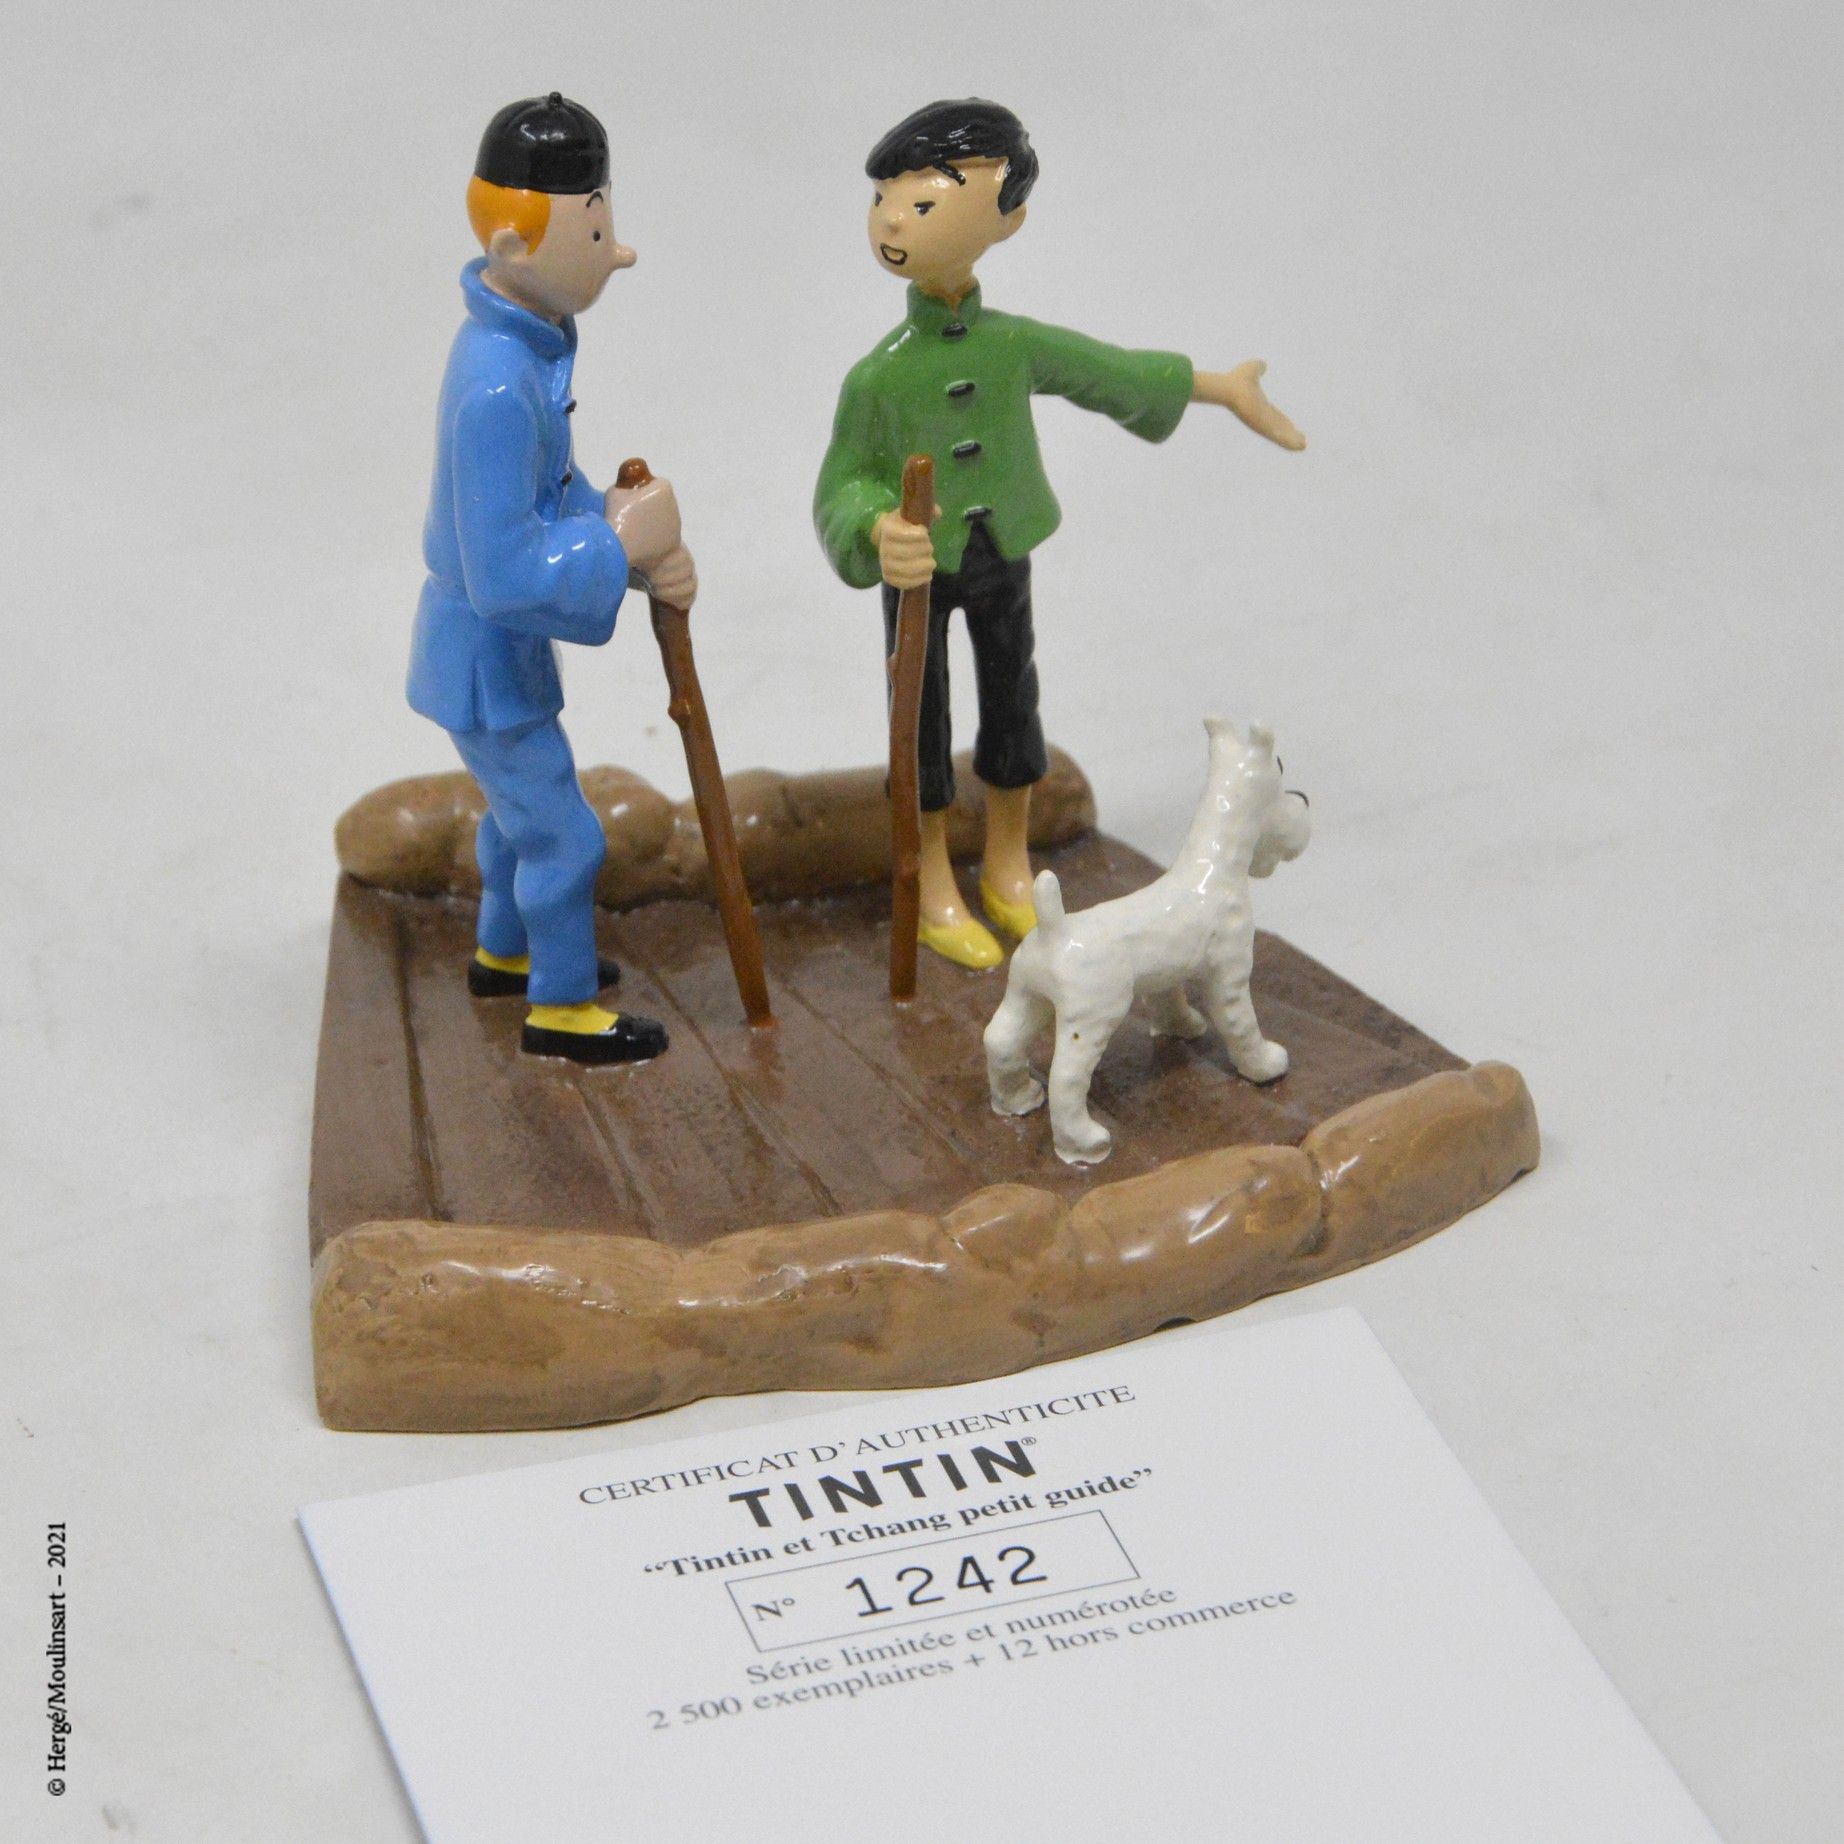 LE LOTUS BLEU Hergé/moulinsart

Hergé :穆林萨特铅/经典系列

蓝莲花：丁丁和老蒋的 "小指南" (2006)

参考资料&hellip;